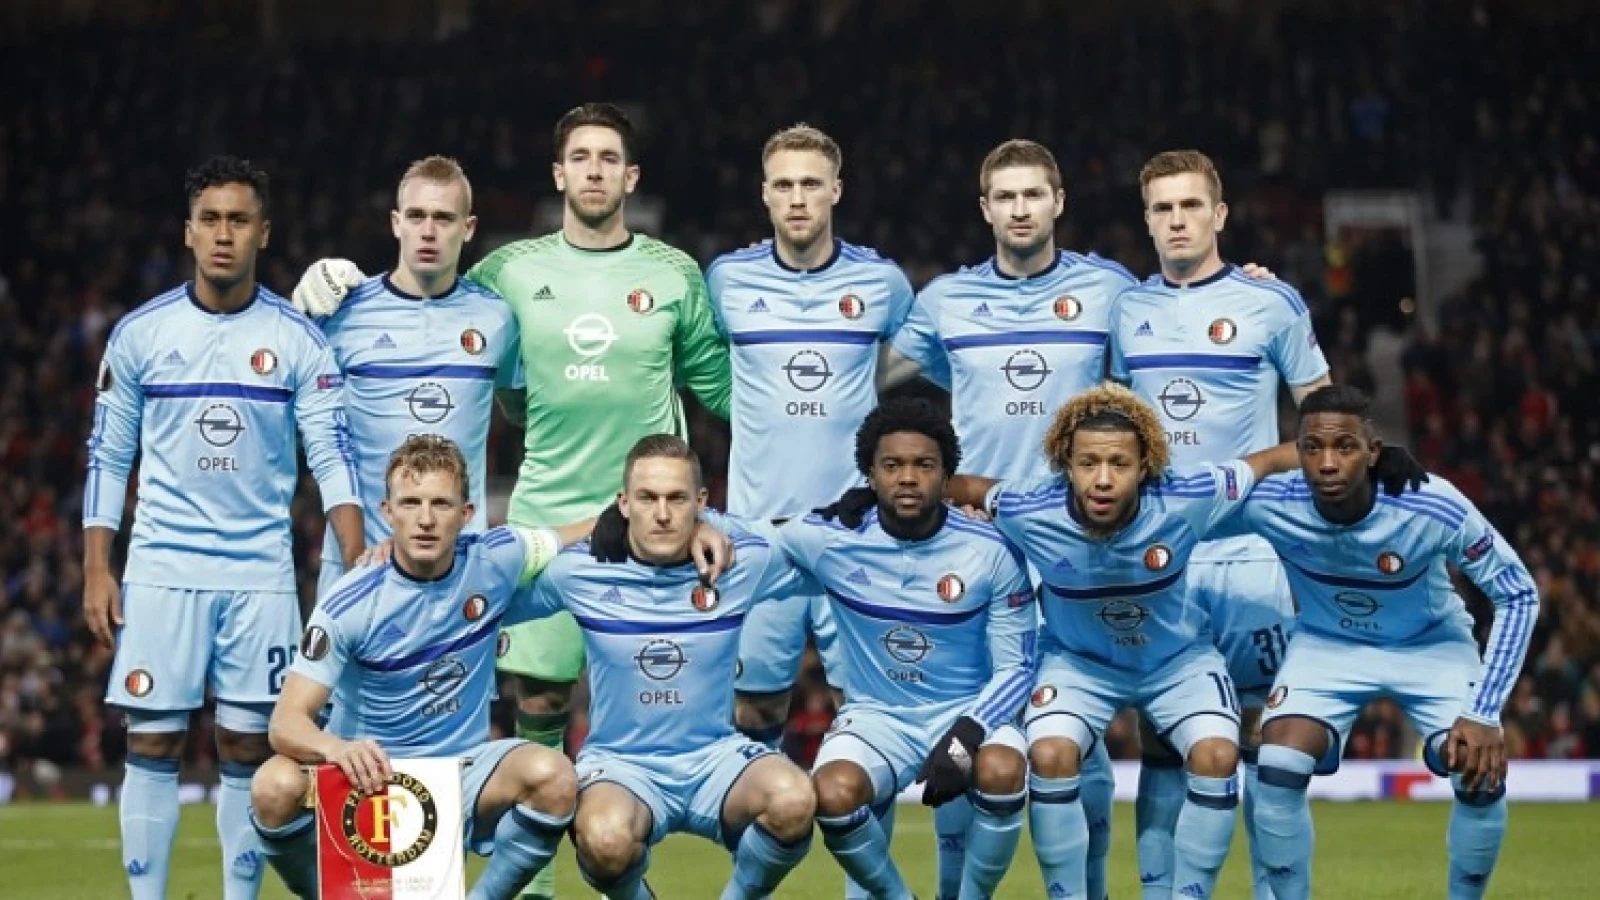 Opstelling | Feyenoord met aantal wijzigingen tegen FC Utrecht